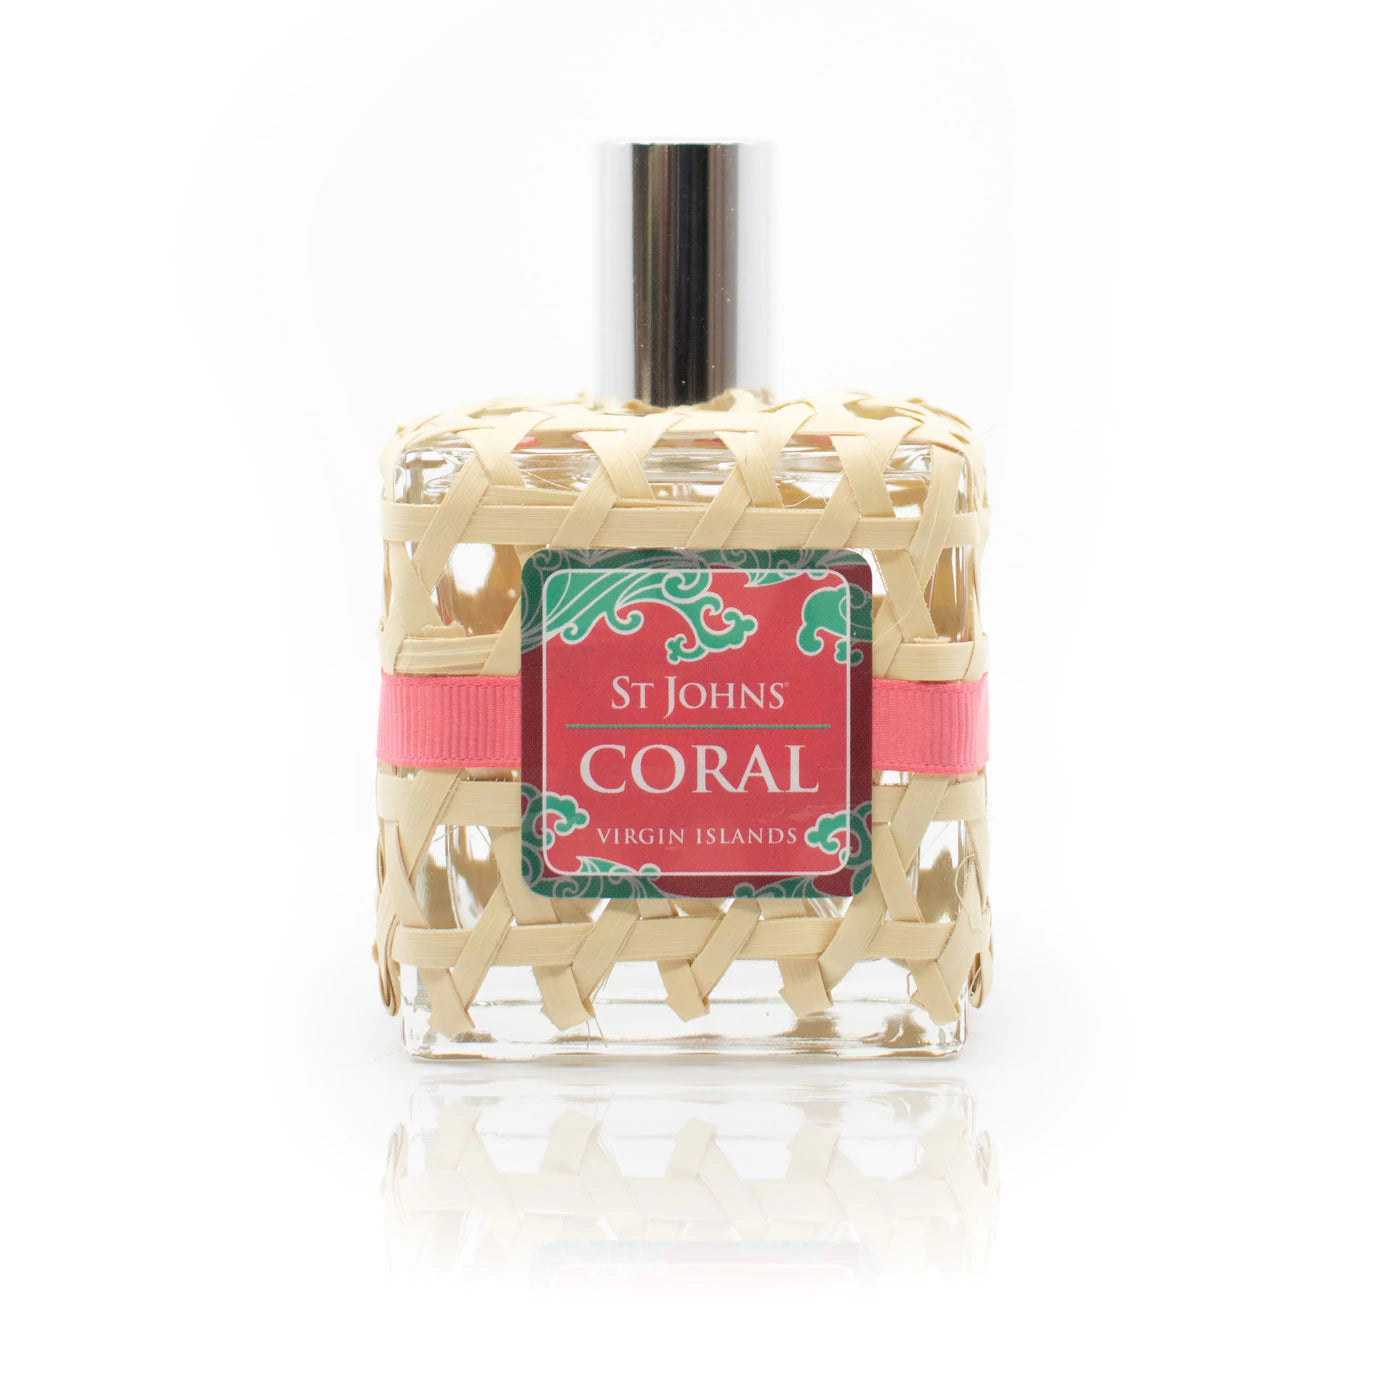 Coral Toilette Perfume Spray